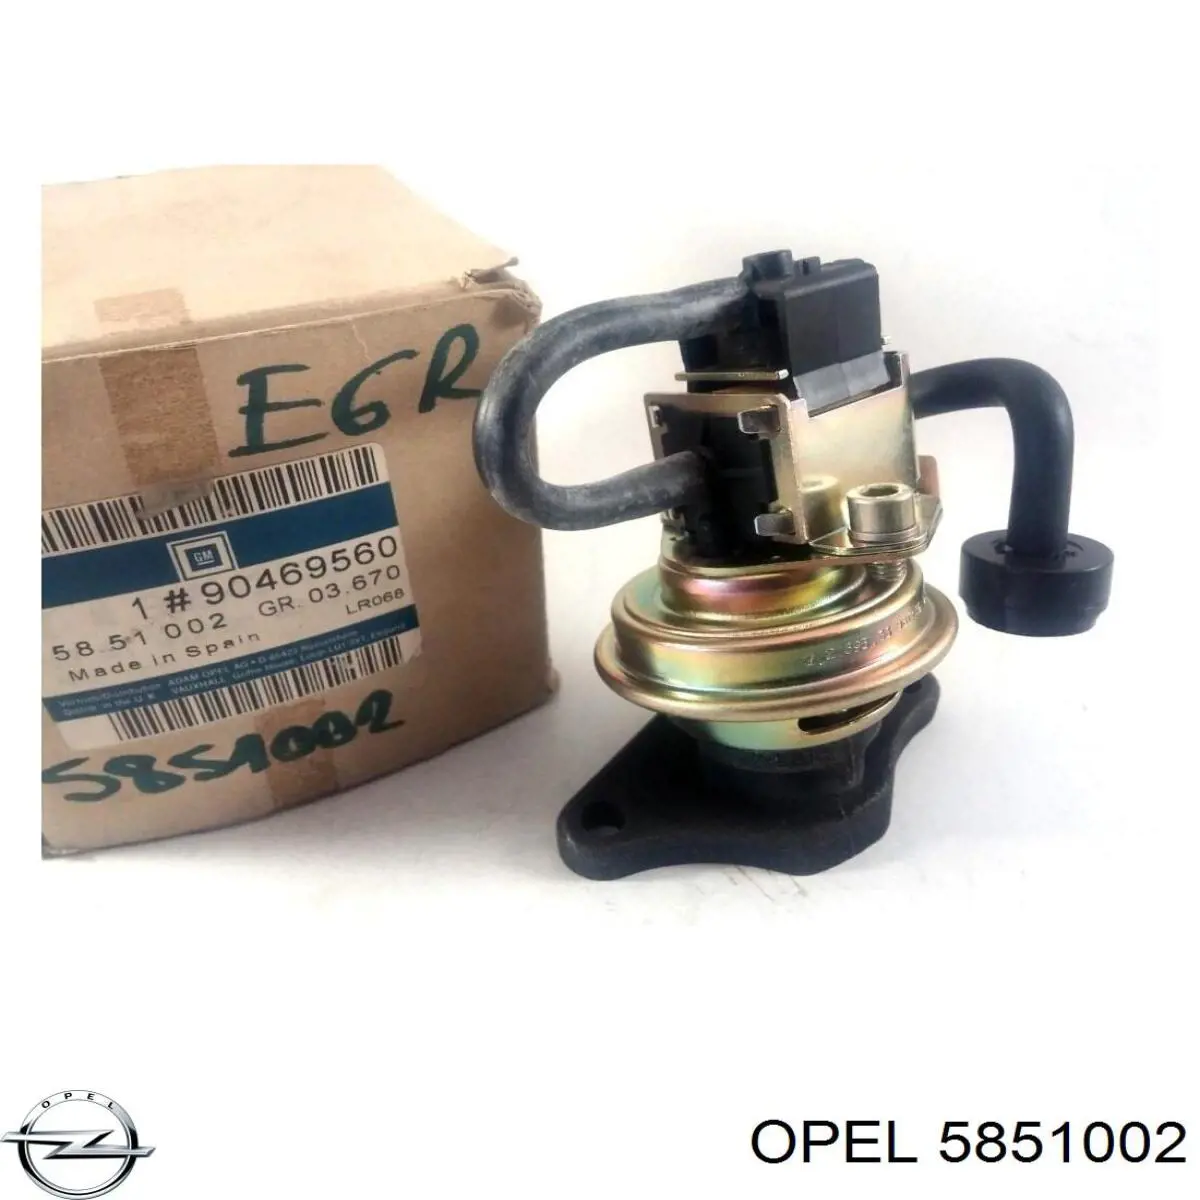 5851002 Opel válvula egr de recirculação dos gases